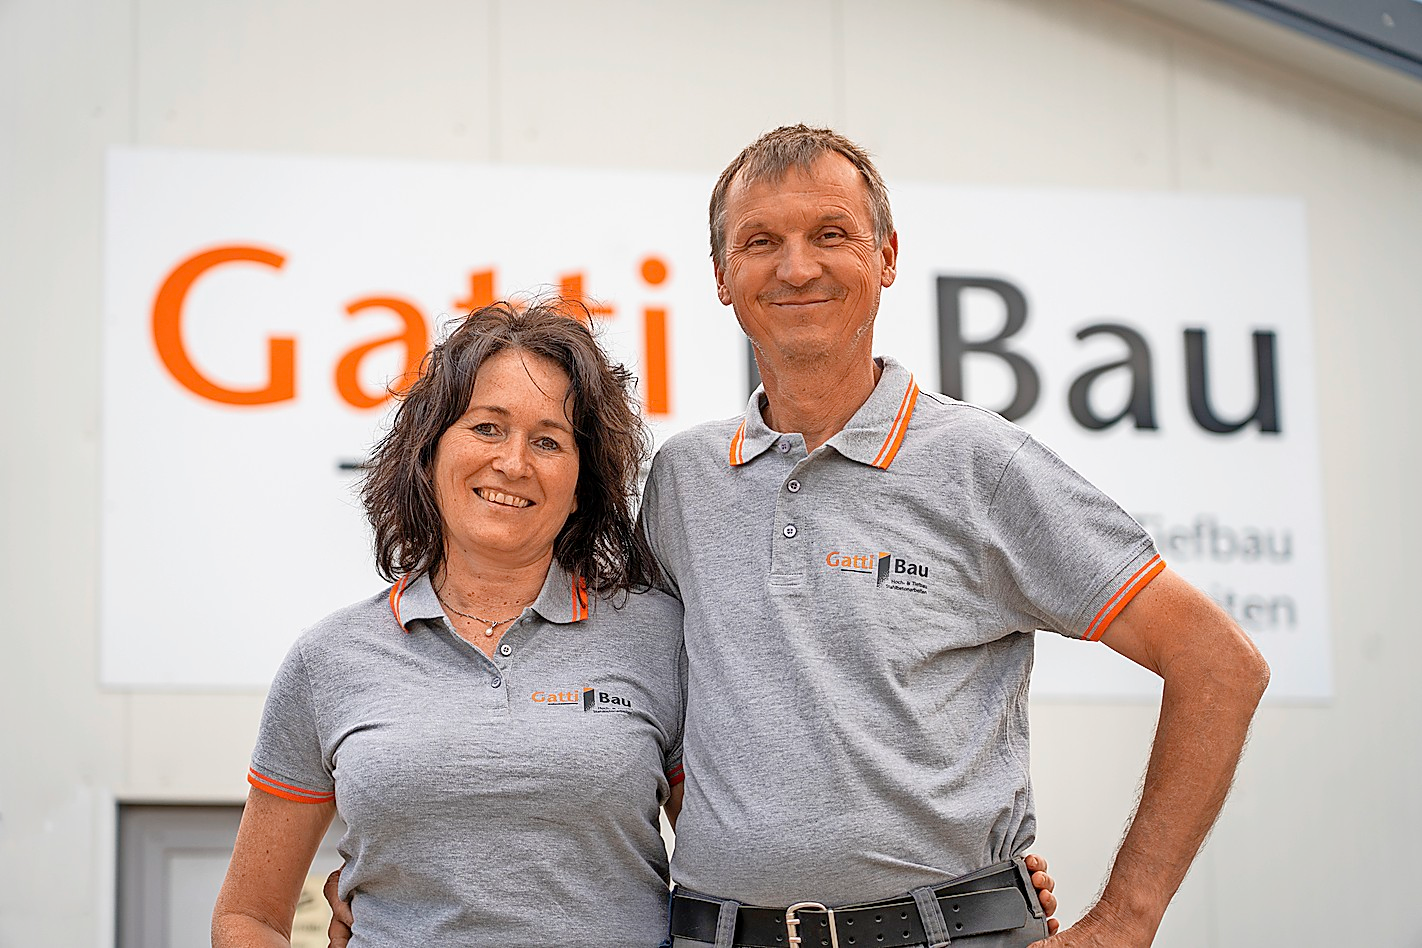 Franz Gatti leitet die Geschäfte in dritter Generation. FOTO: GATTI BAU